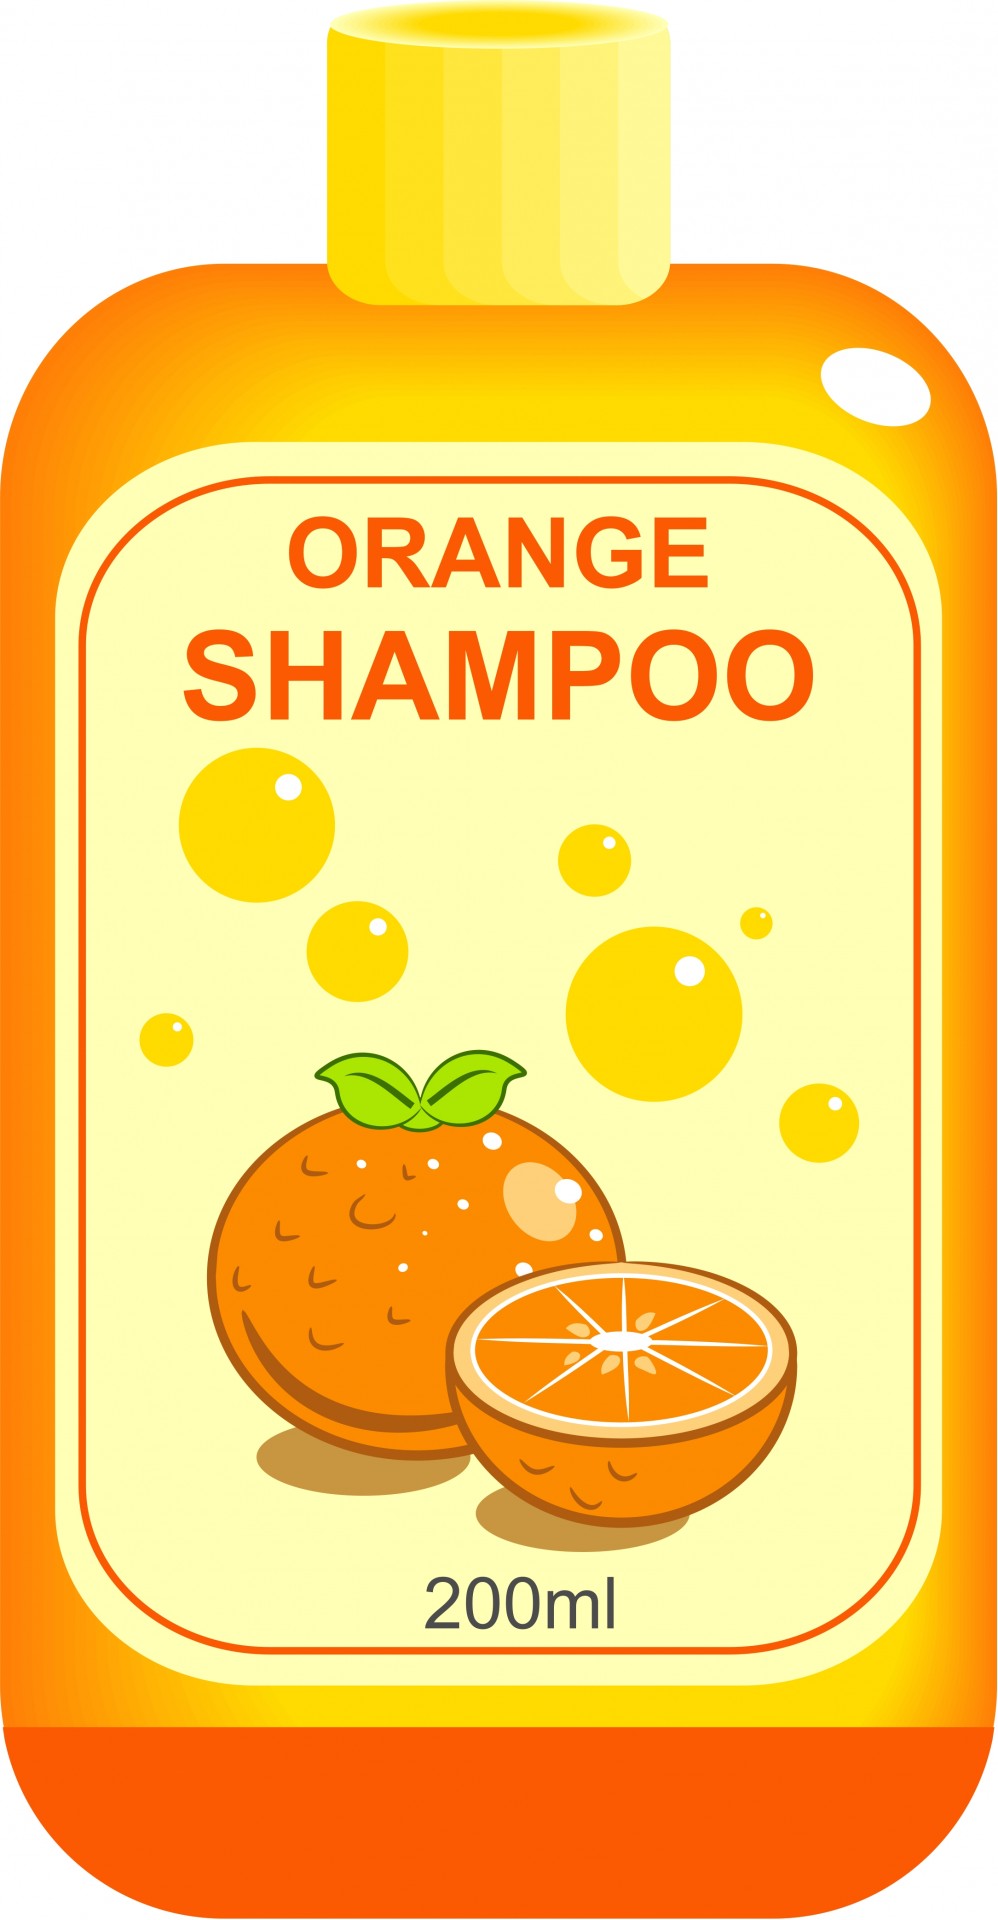 shampoo clipart